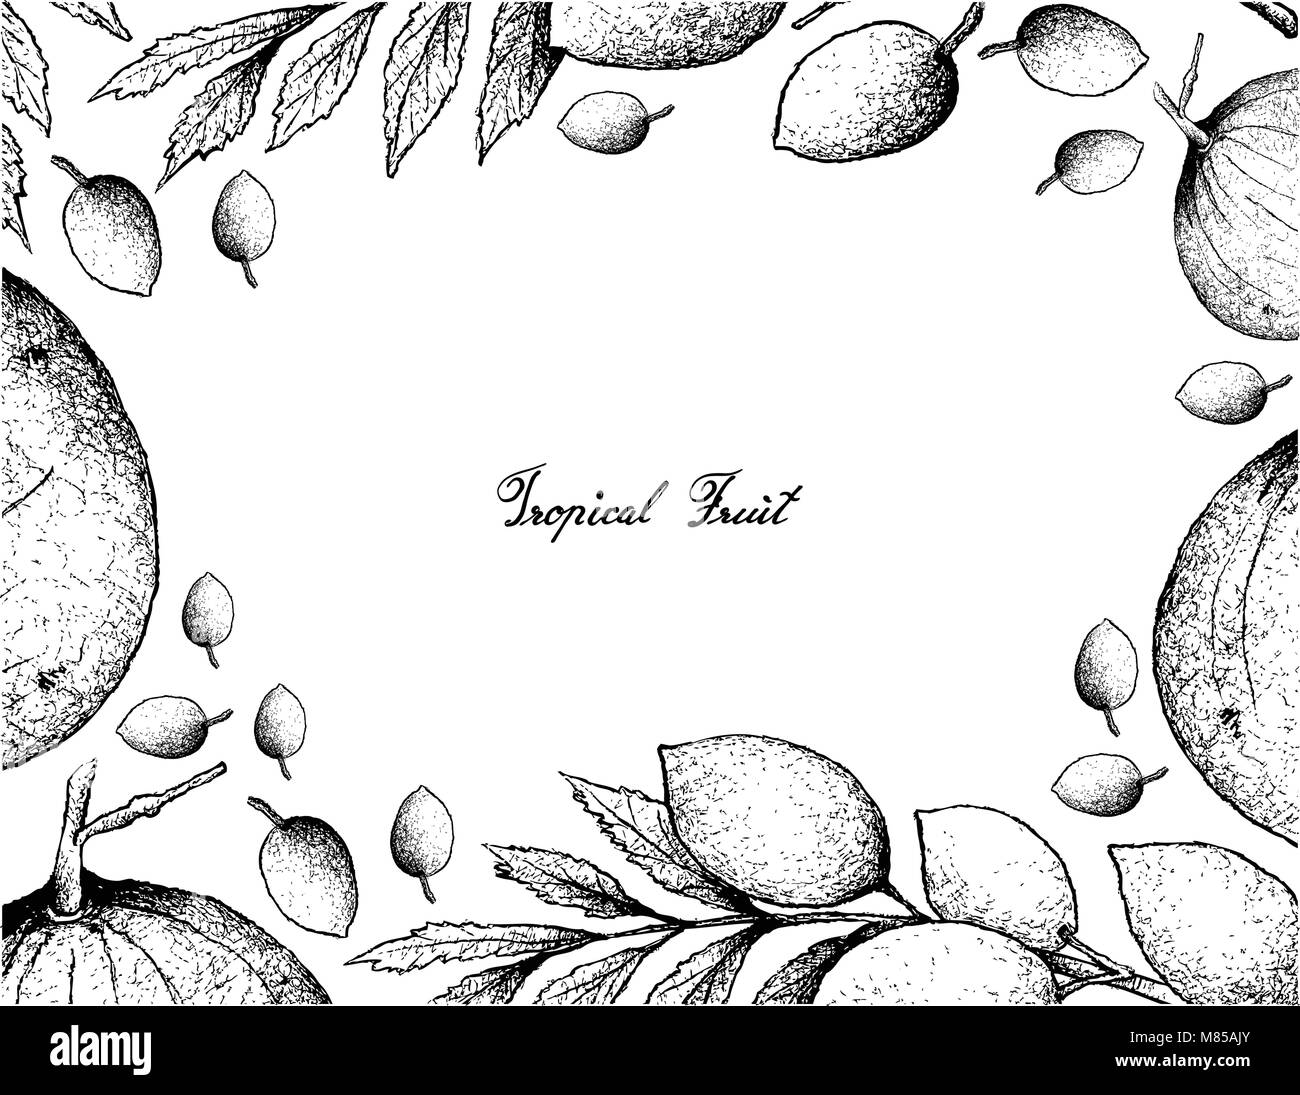 Tropical Fruits, Illustration Frame of Hand Drawn Sketch Sandoricum Koetjape, Santol or Krathon and Elaeocarpus Hygrophilus Fruits. A Tropical Fruit i Stock Vector